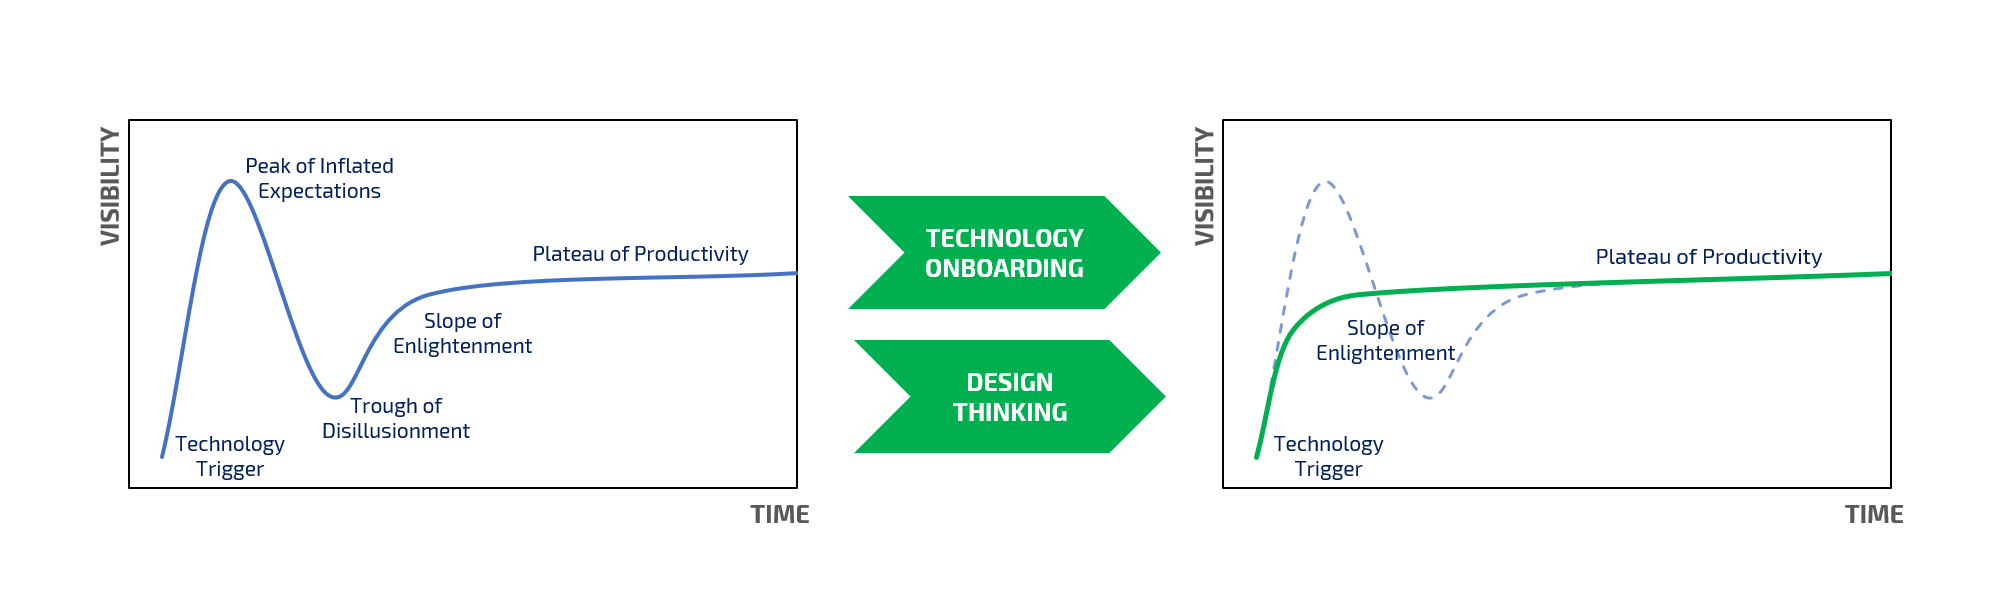 Il Technology Onboarding accelera l'adozione delle tecnologie e abbrevia le fasi di sperimentazione, appiattendo la curva dell'Hype.